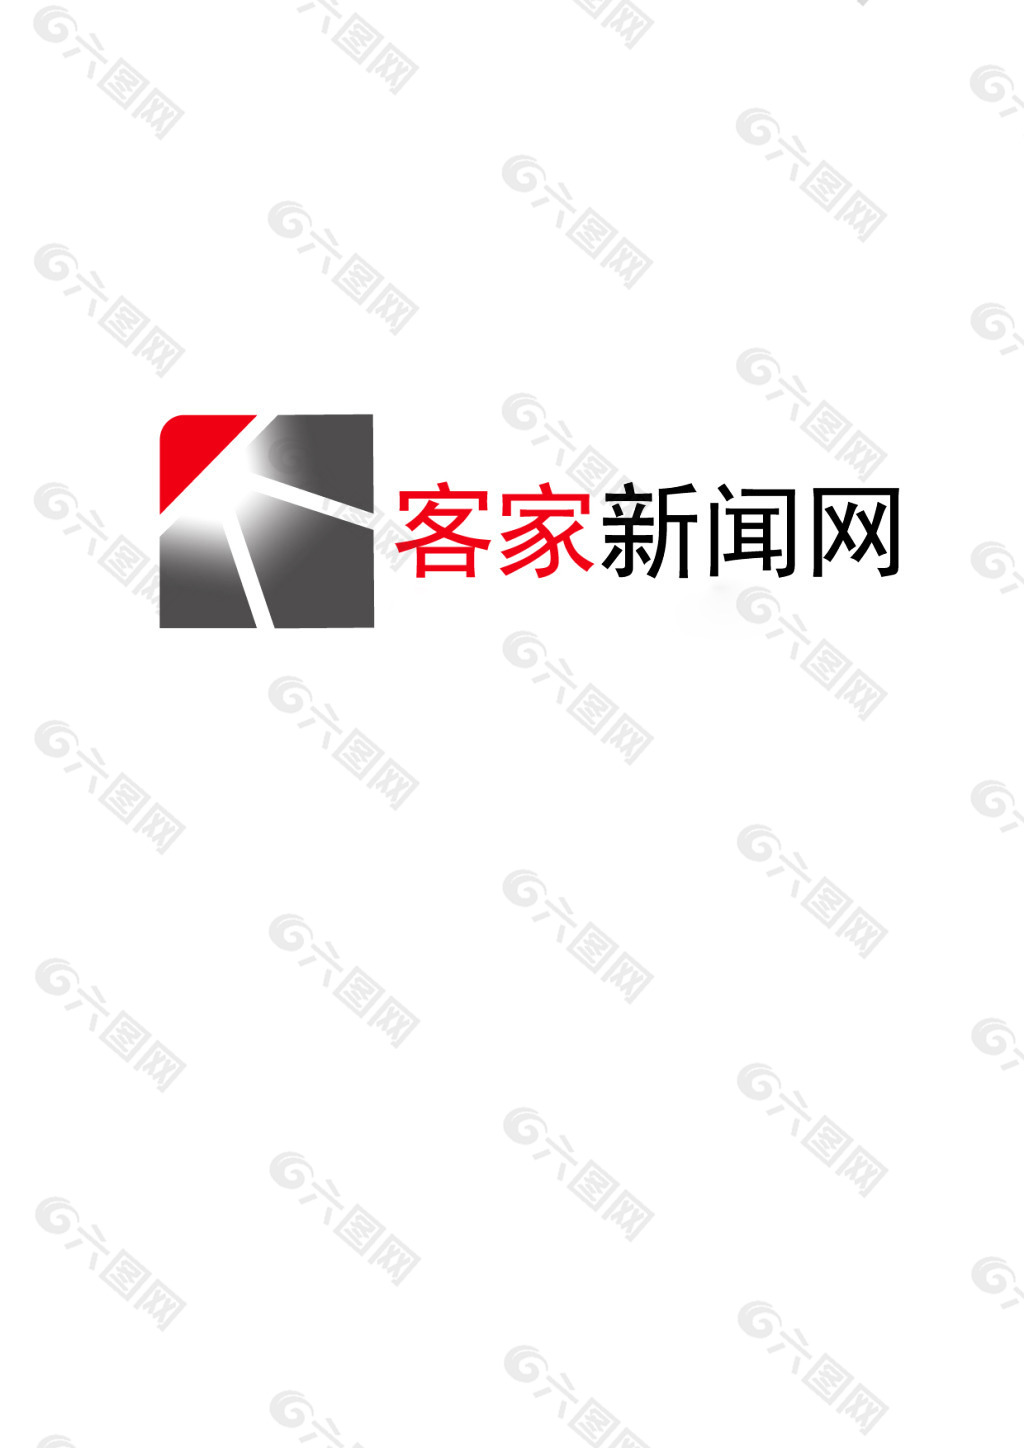 新闻logo